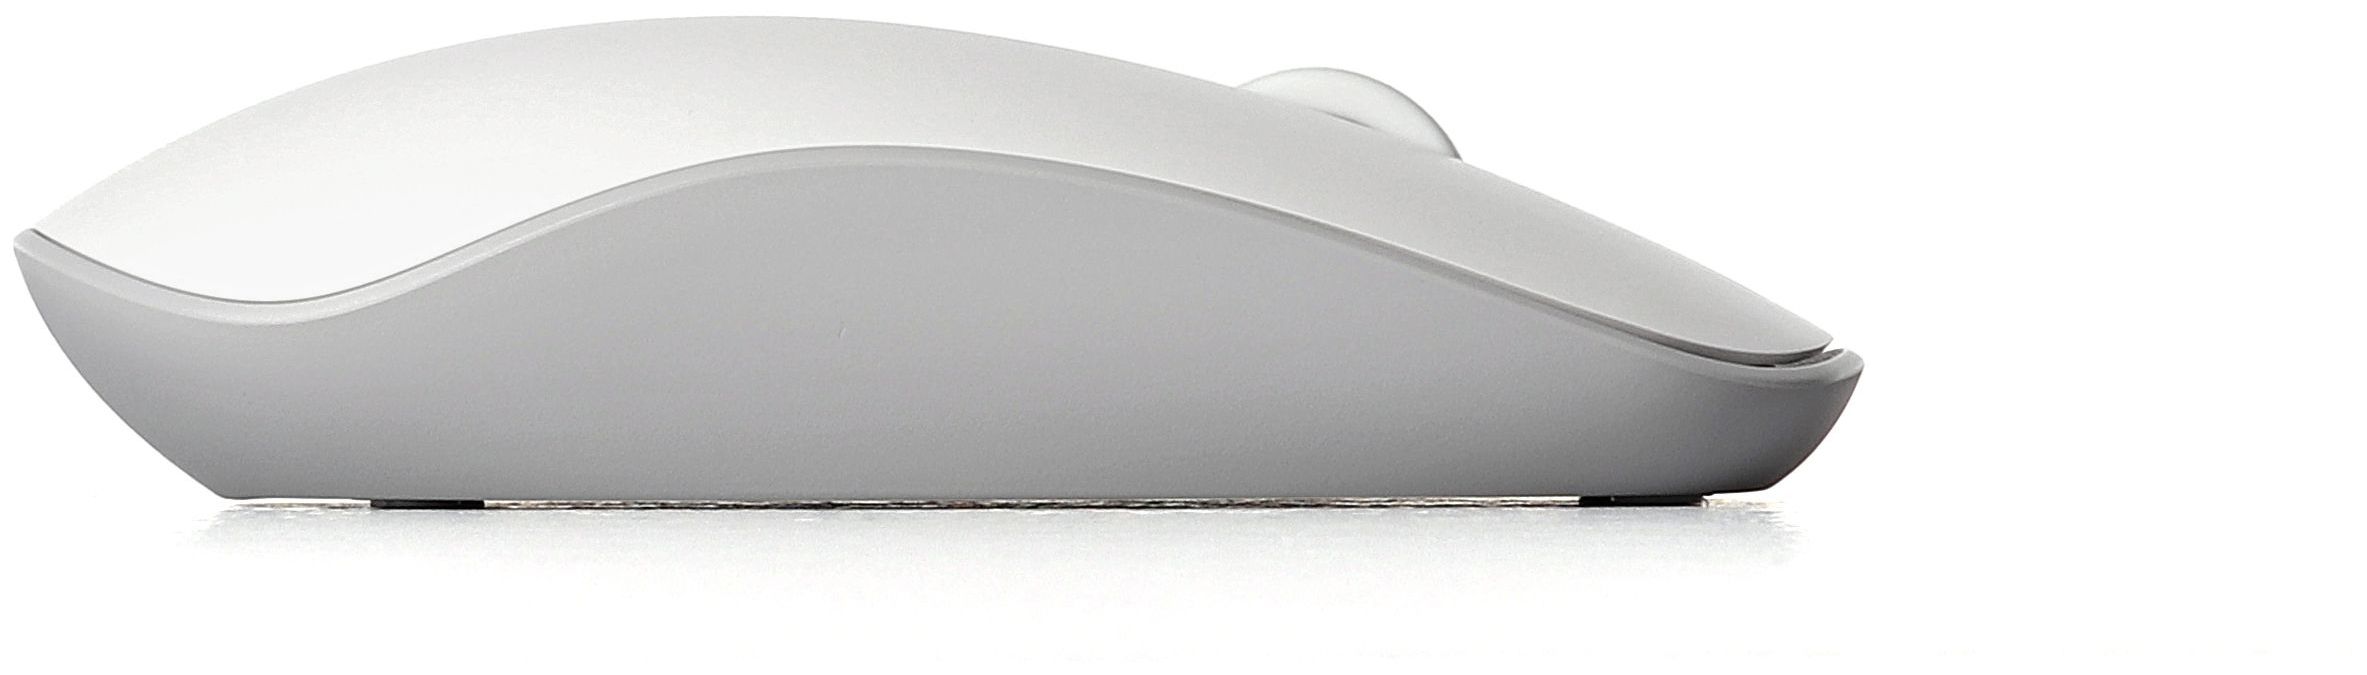 Rapoo M200 Silent 1300 DPI Optisch Maus von Büro expert (Weiß) Technomarkt